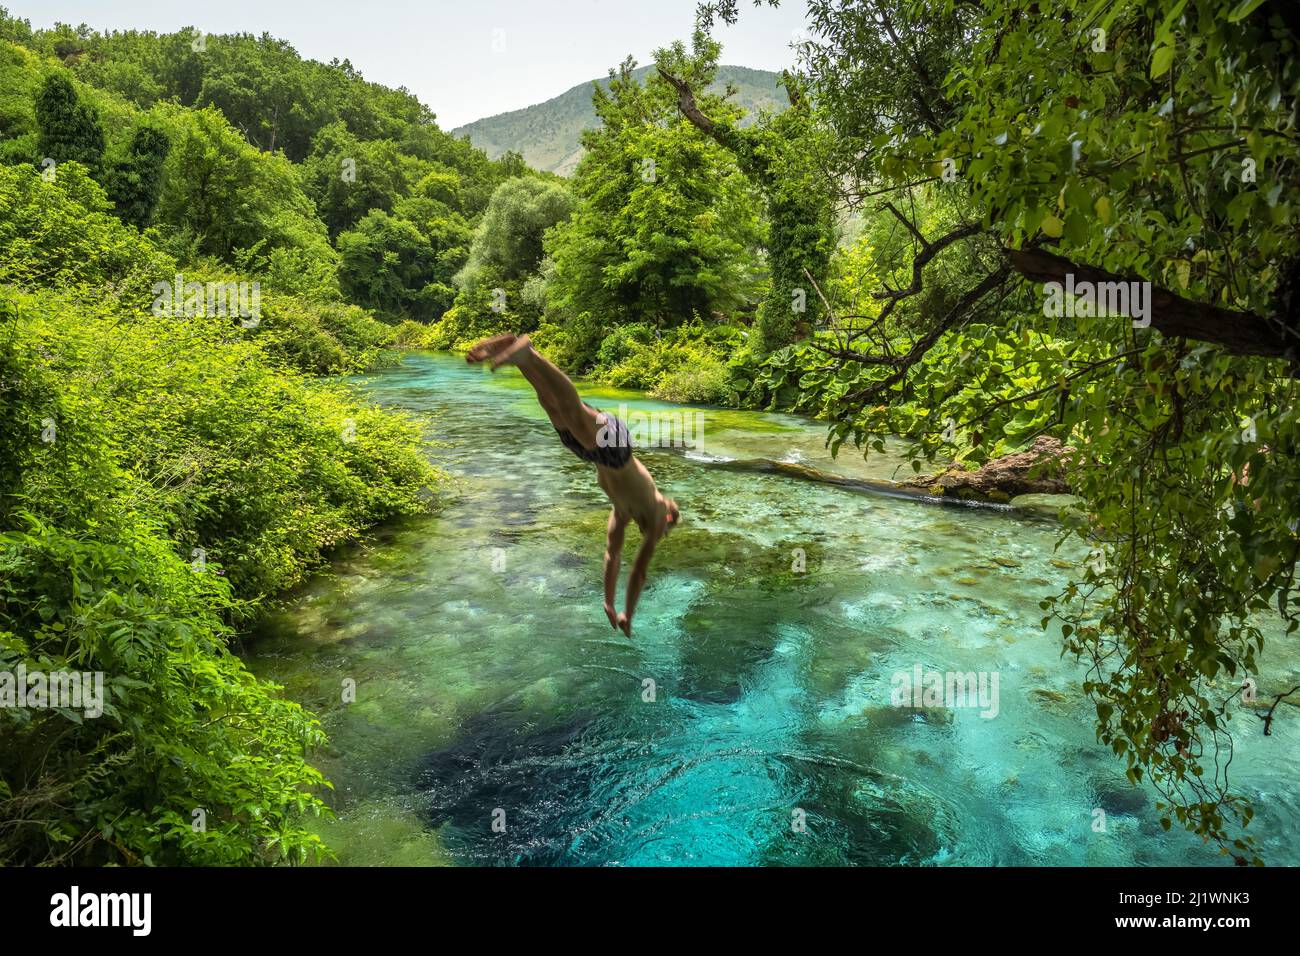 Un hombre no identificado salta al hermoso Blue Eye de la primavera de color turquesa o Syri i Kalter cerca de la ciudad de Muzine en Albania. Foto de stock